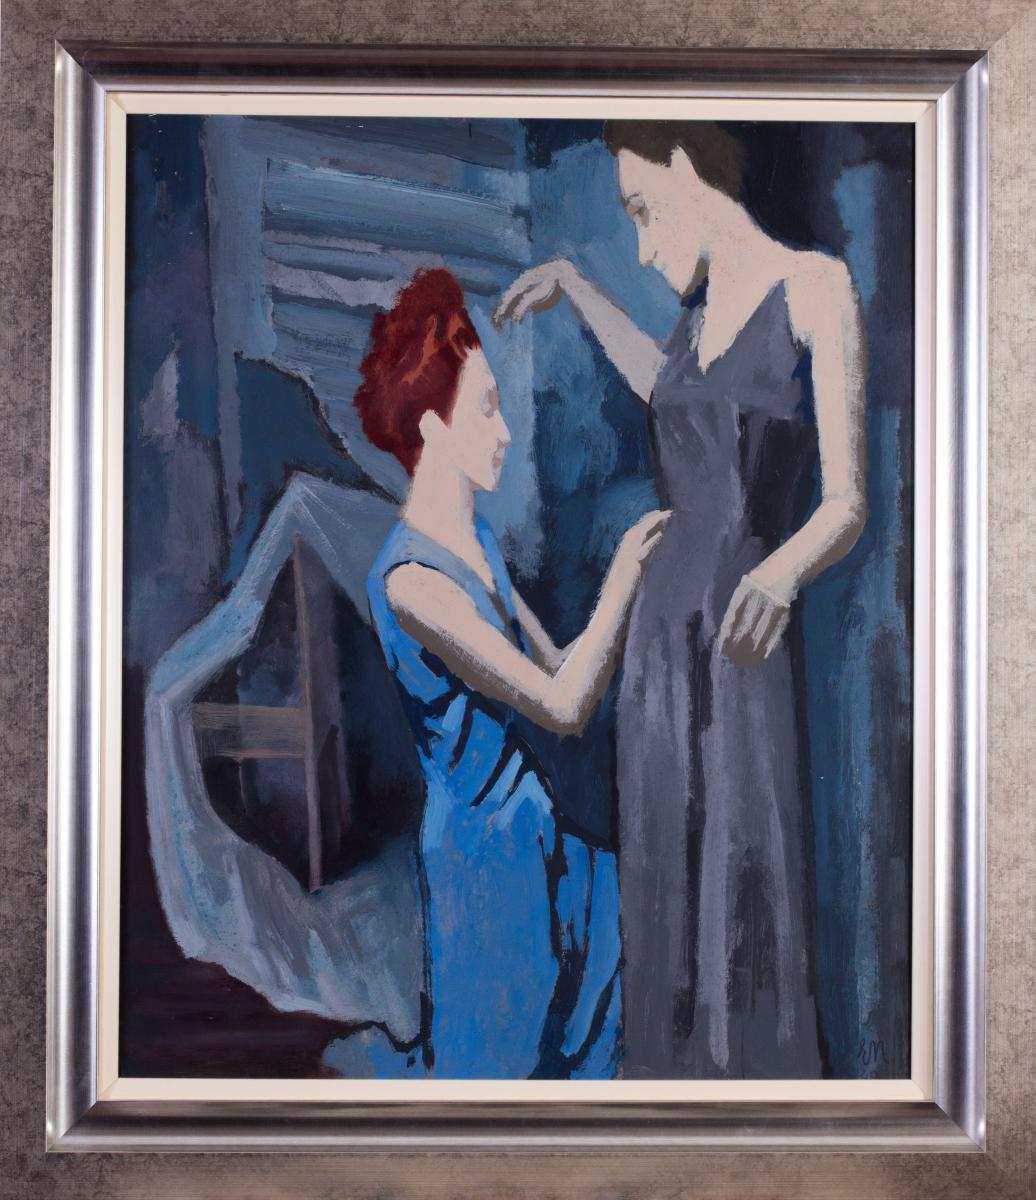 Ernest Neuschul (Czech, 1895-1968), The Seamstress 1946-49